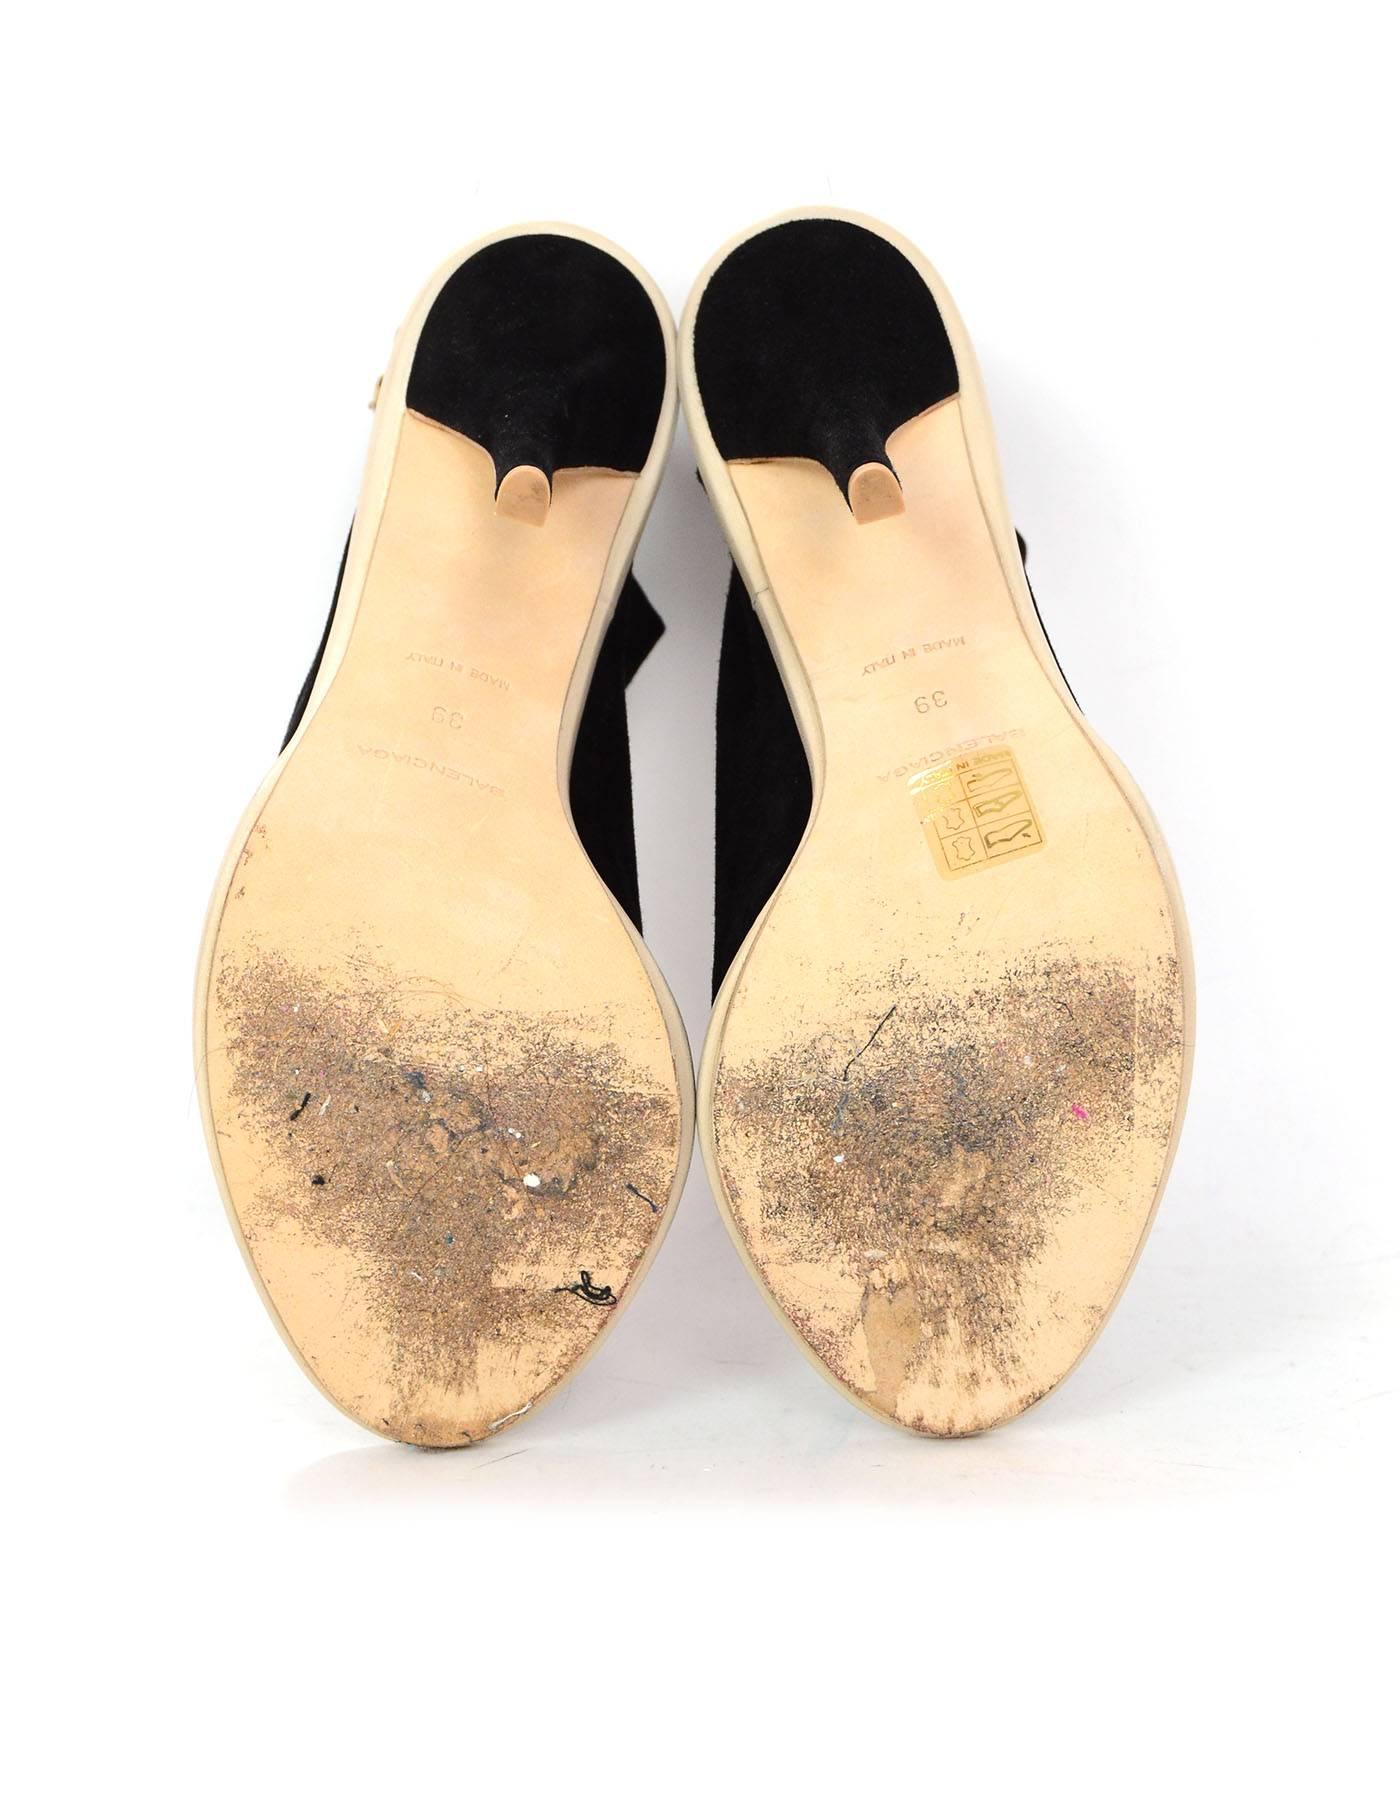 Women's Balenciaga Black Suede Glove Open-Toe Sandals Sz 39 rt. $735